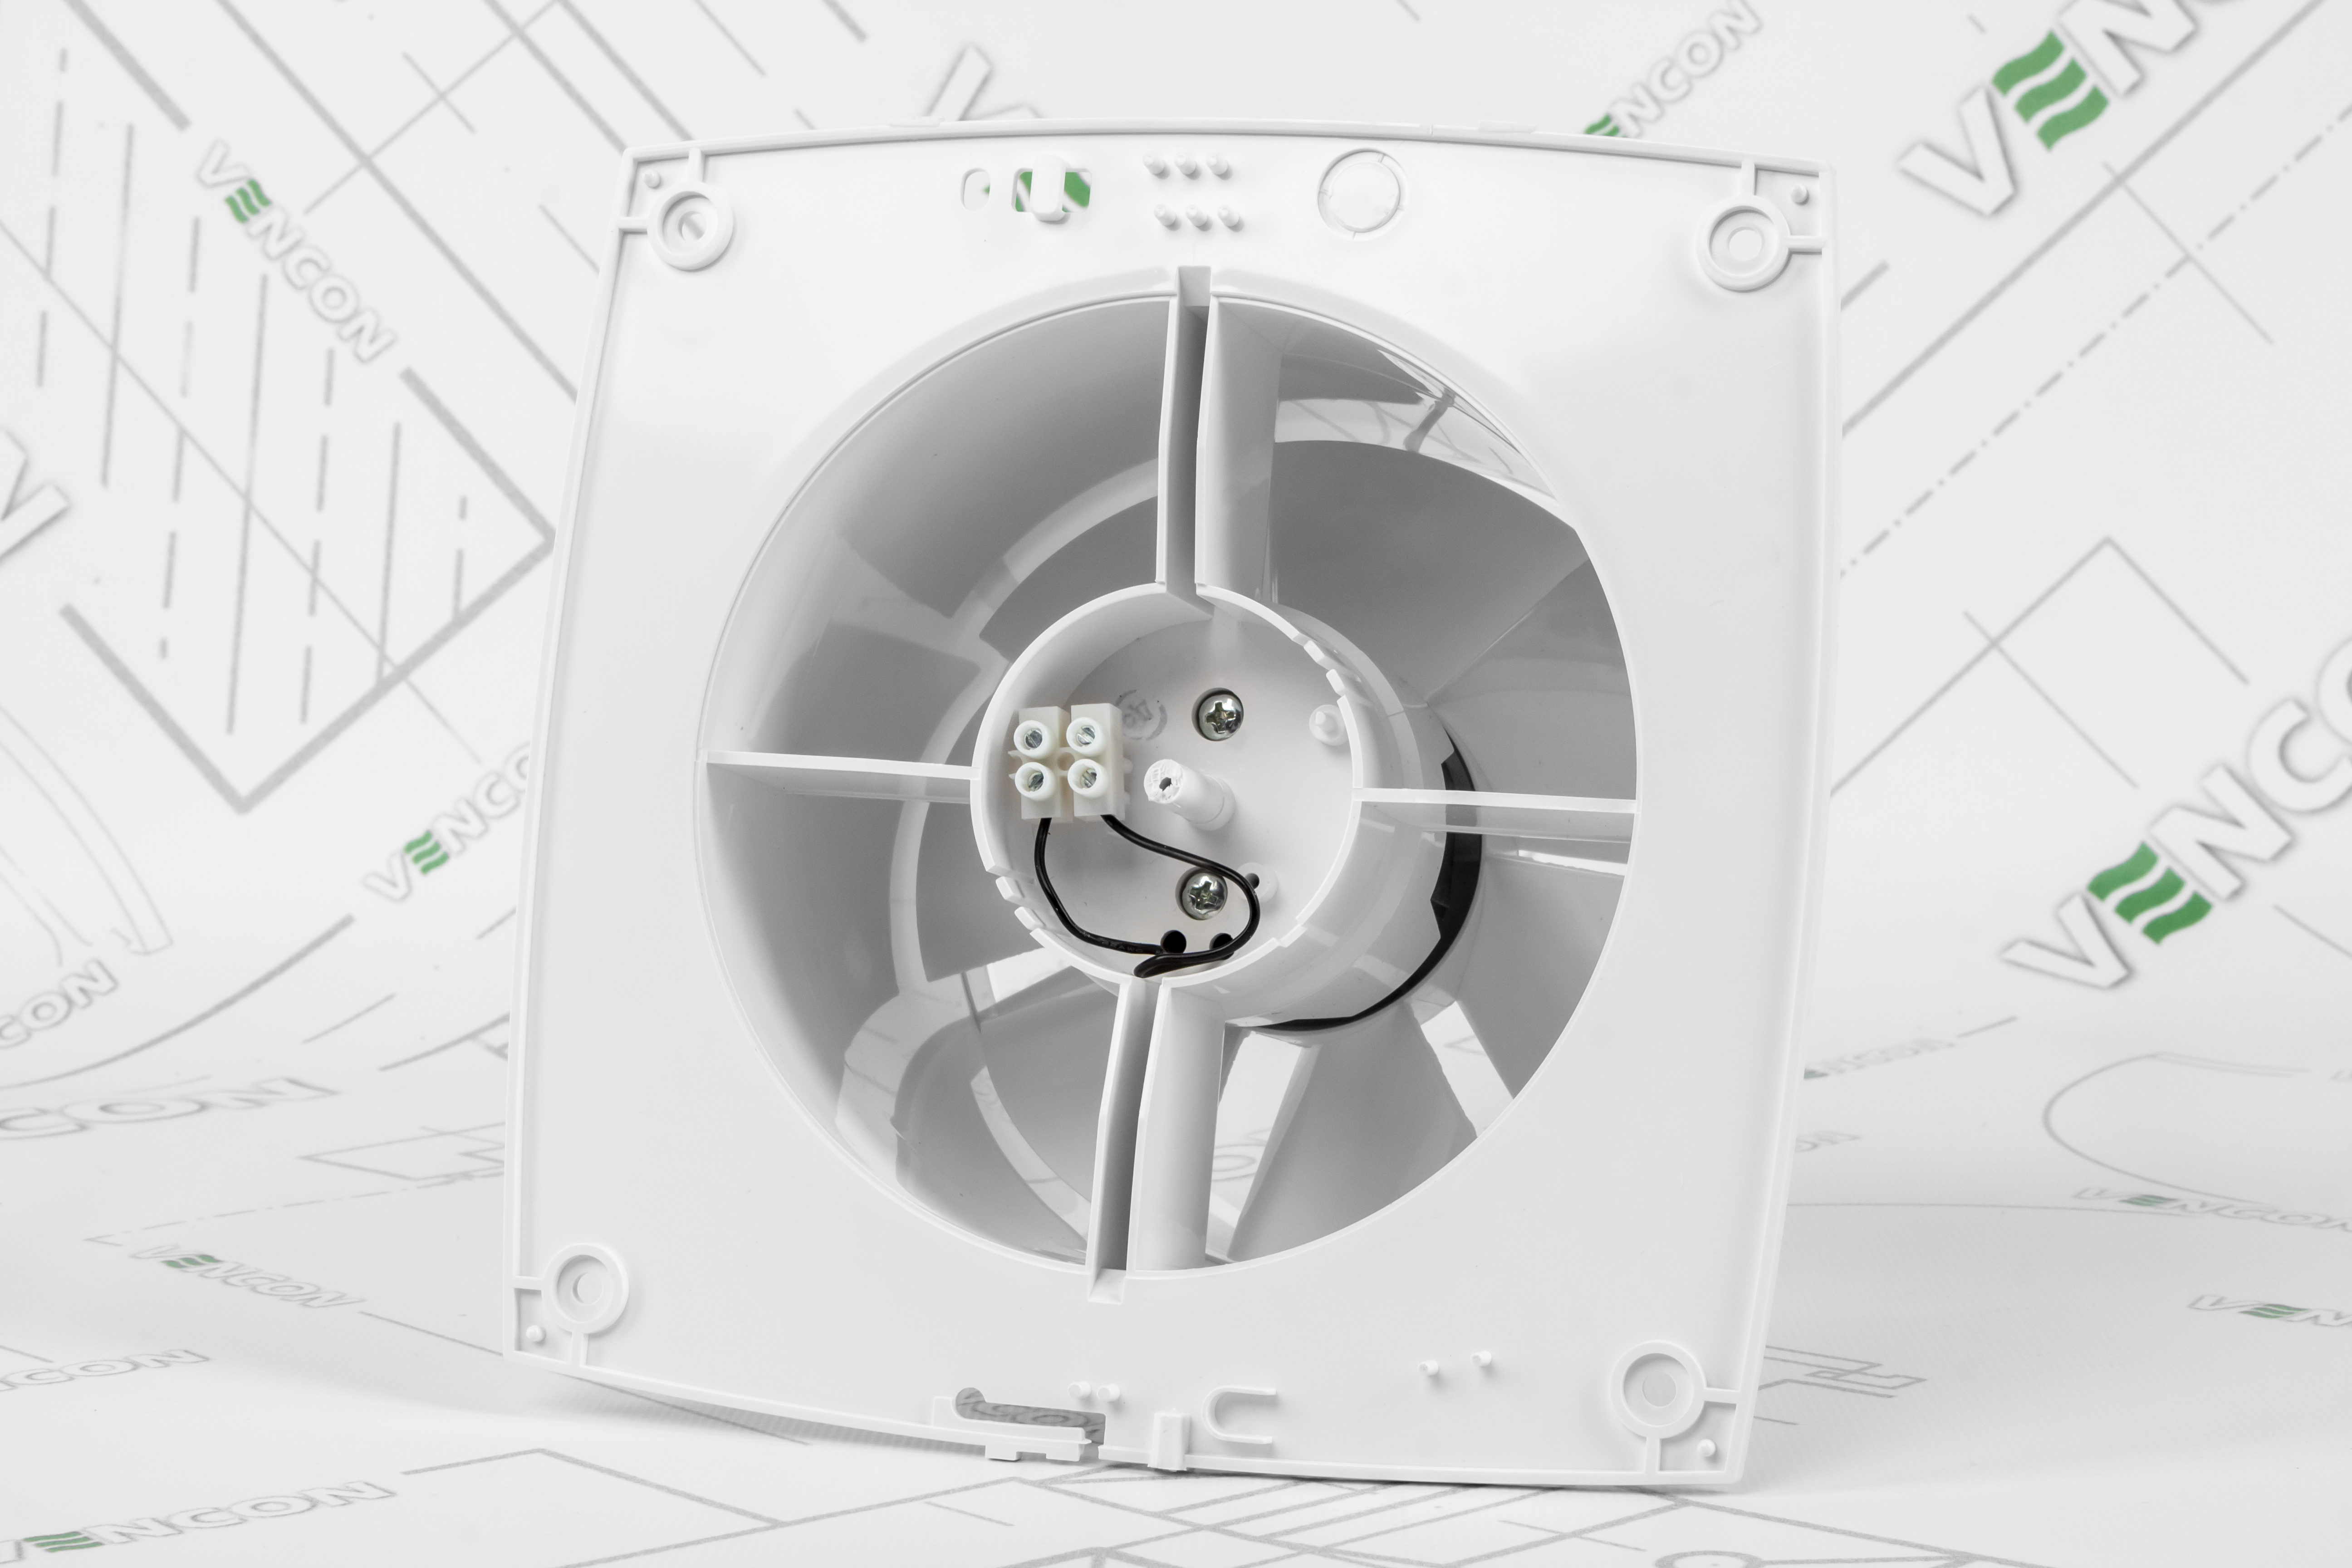 Вытяжной вентилятор Blauberg Slim 150 отзывы - изображения 5